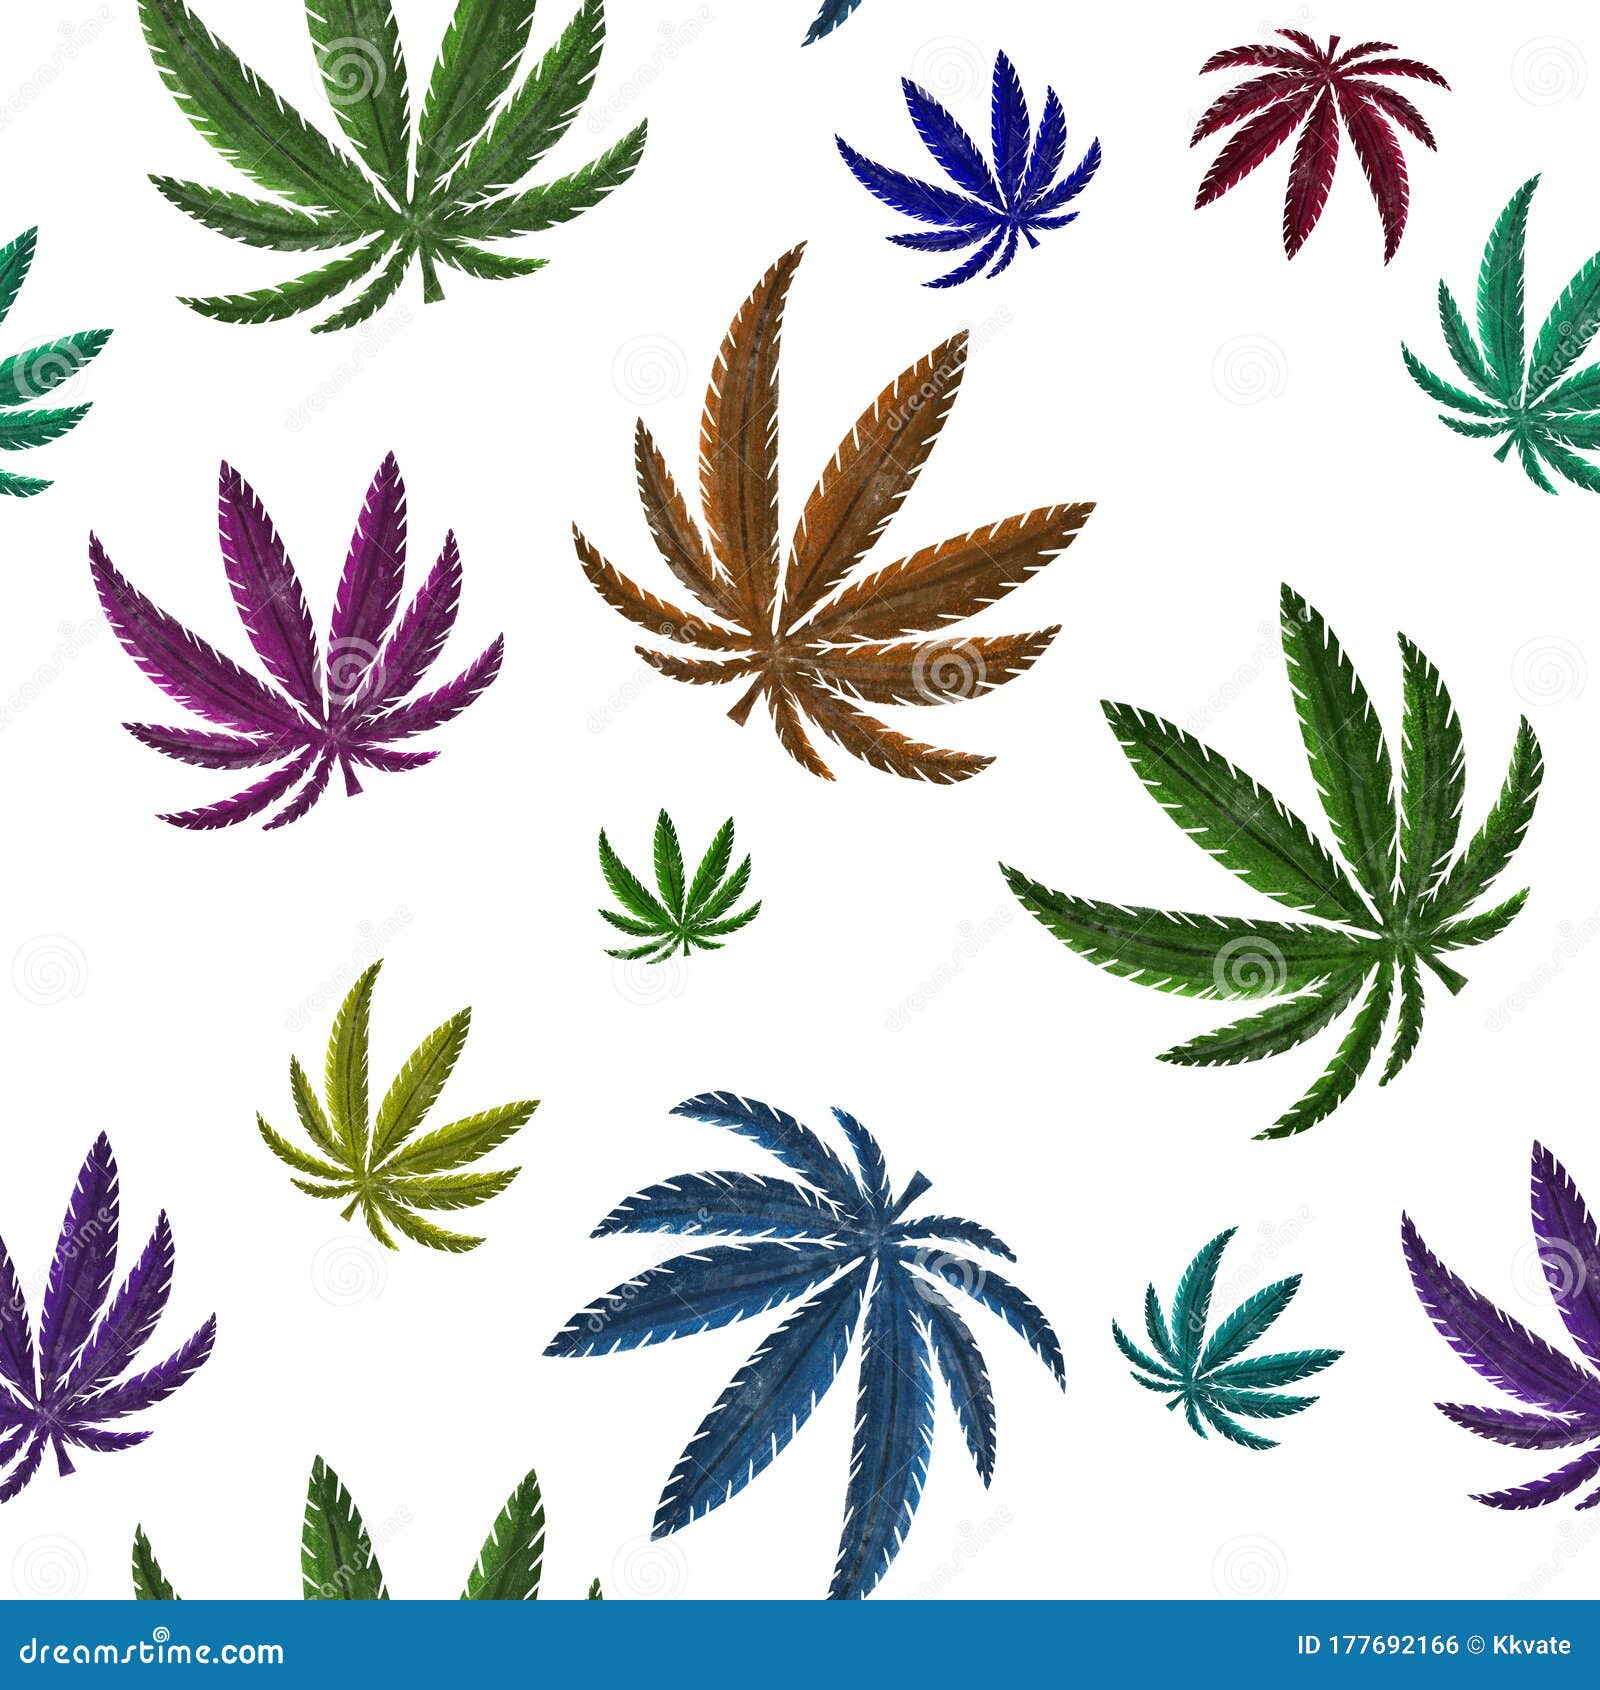 Ткань с листьями конопли что такое марихуану фото